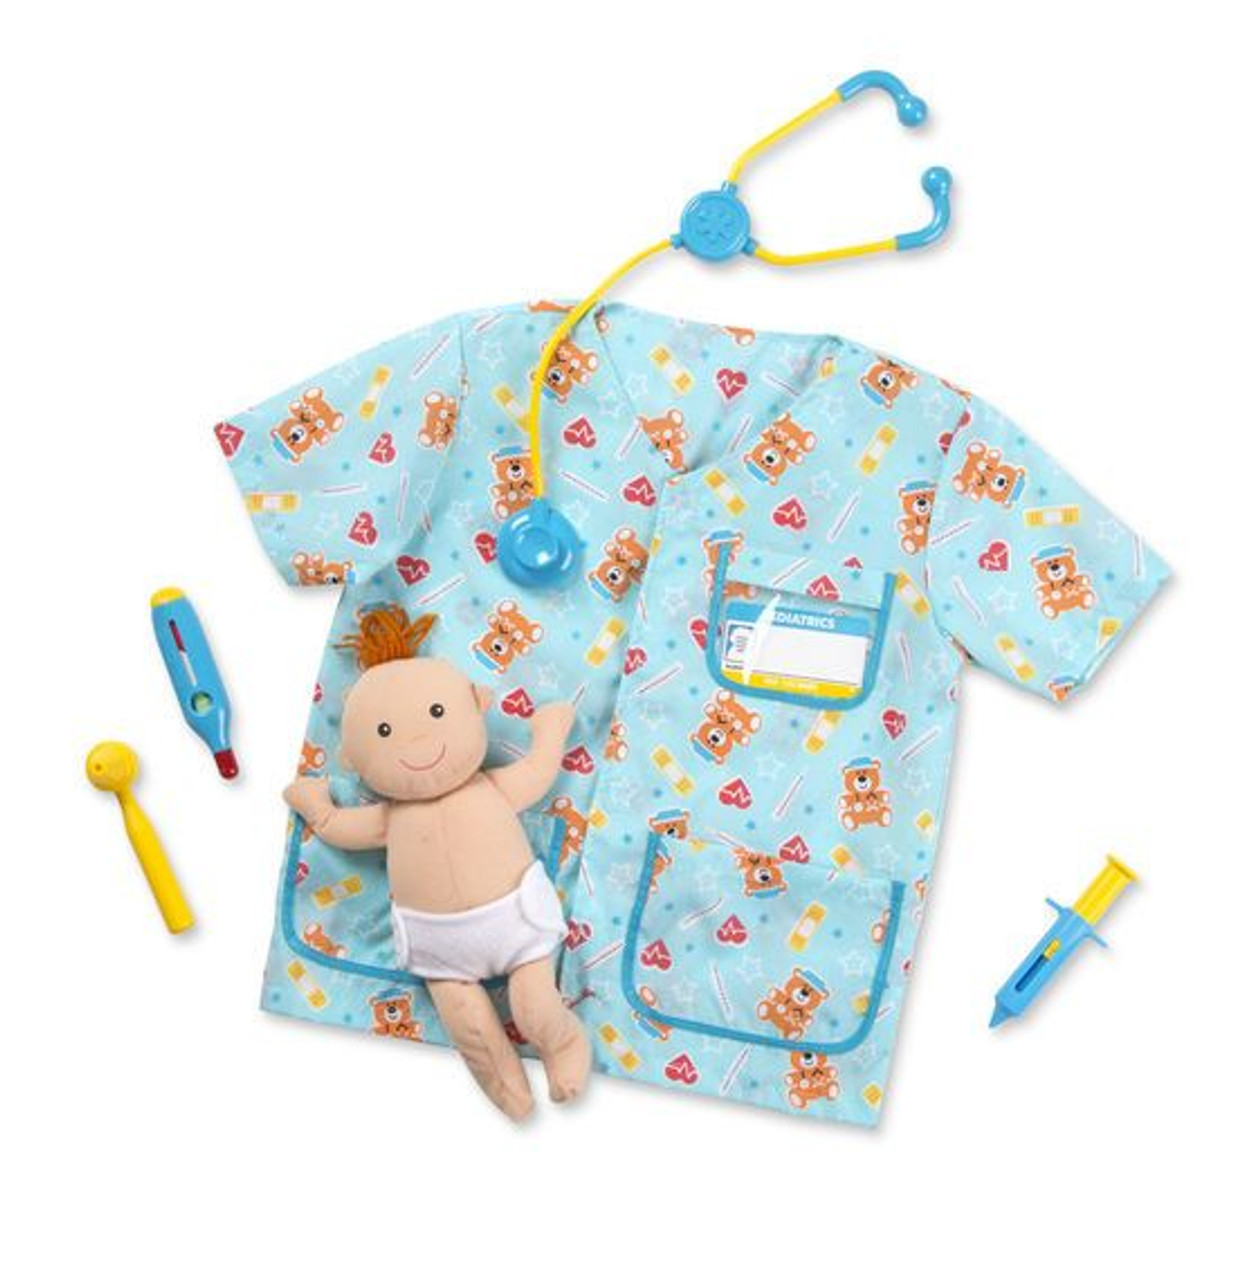 Pediatric Nurse Costume Set - inset